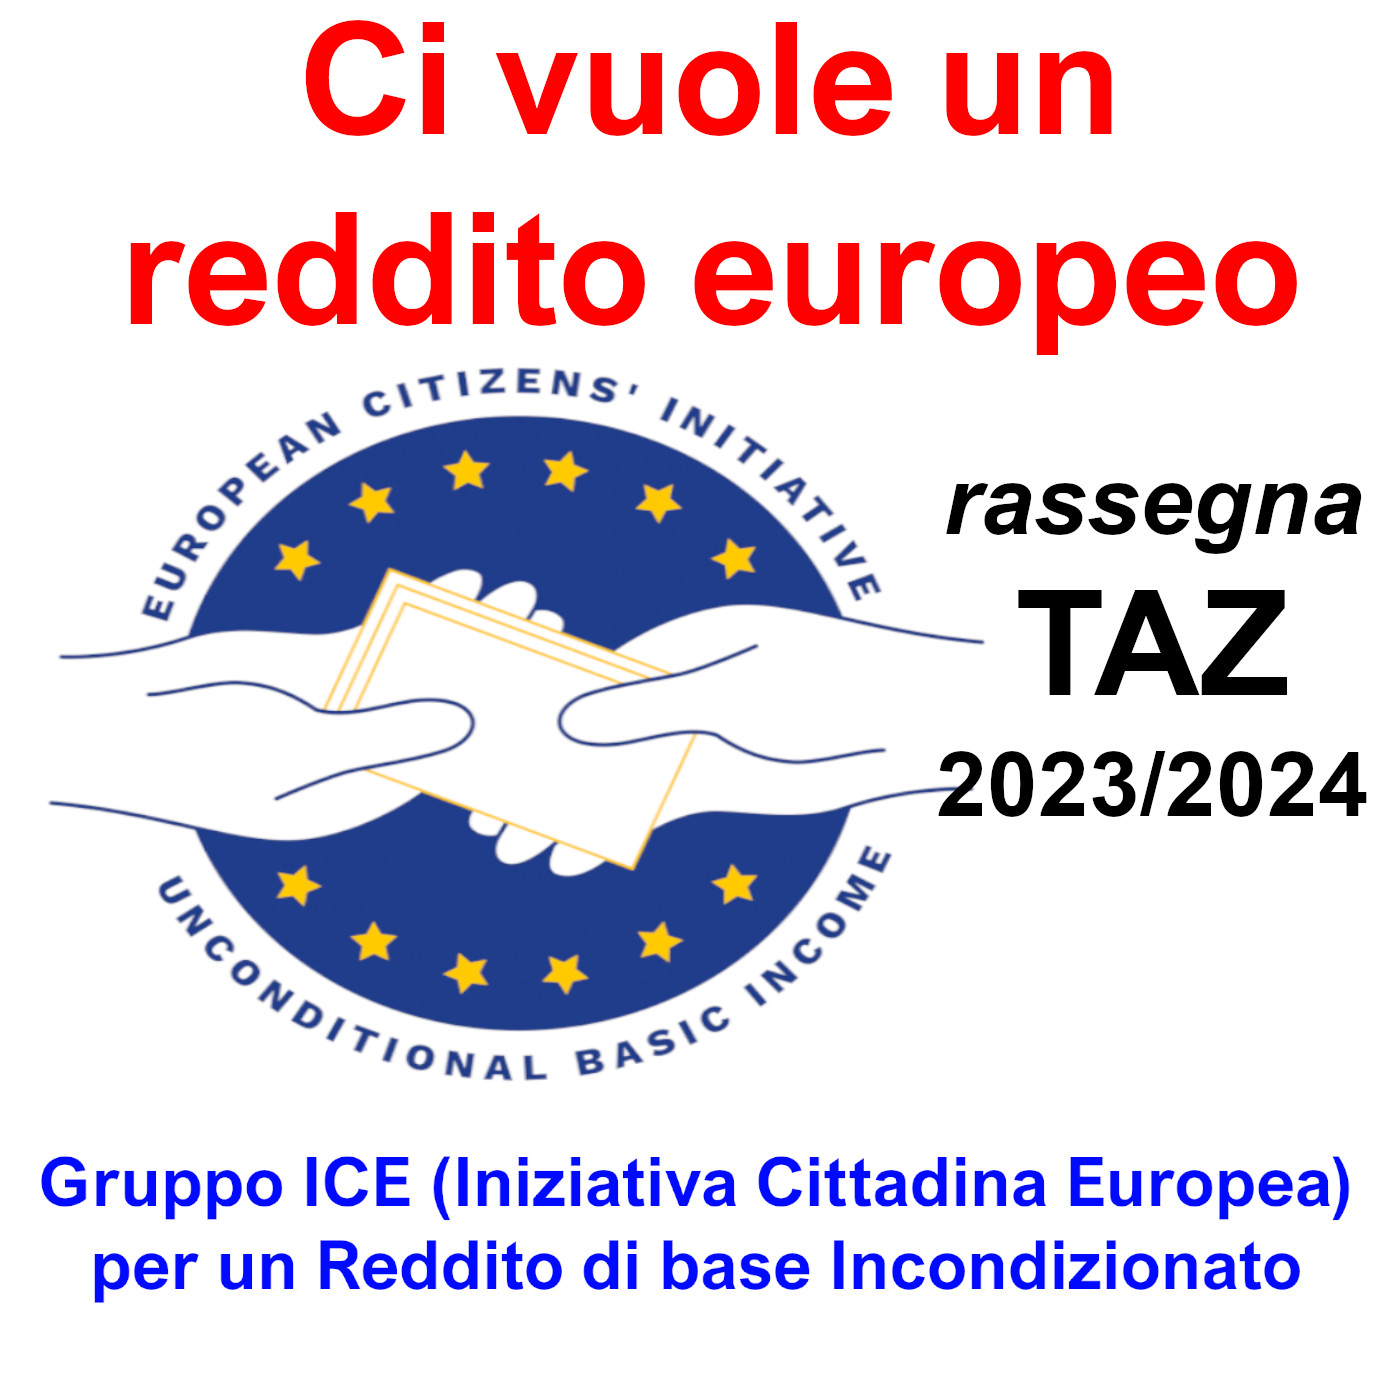 Ci vuole un reddito europeo - Gruppo ICE (Iniziativa Cittadina Europea) per un Reddito di base Incondizionato - TAZ 2023/2024